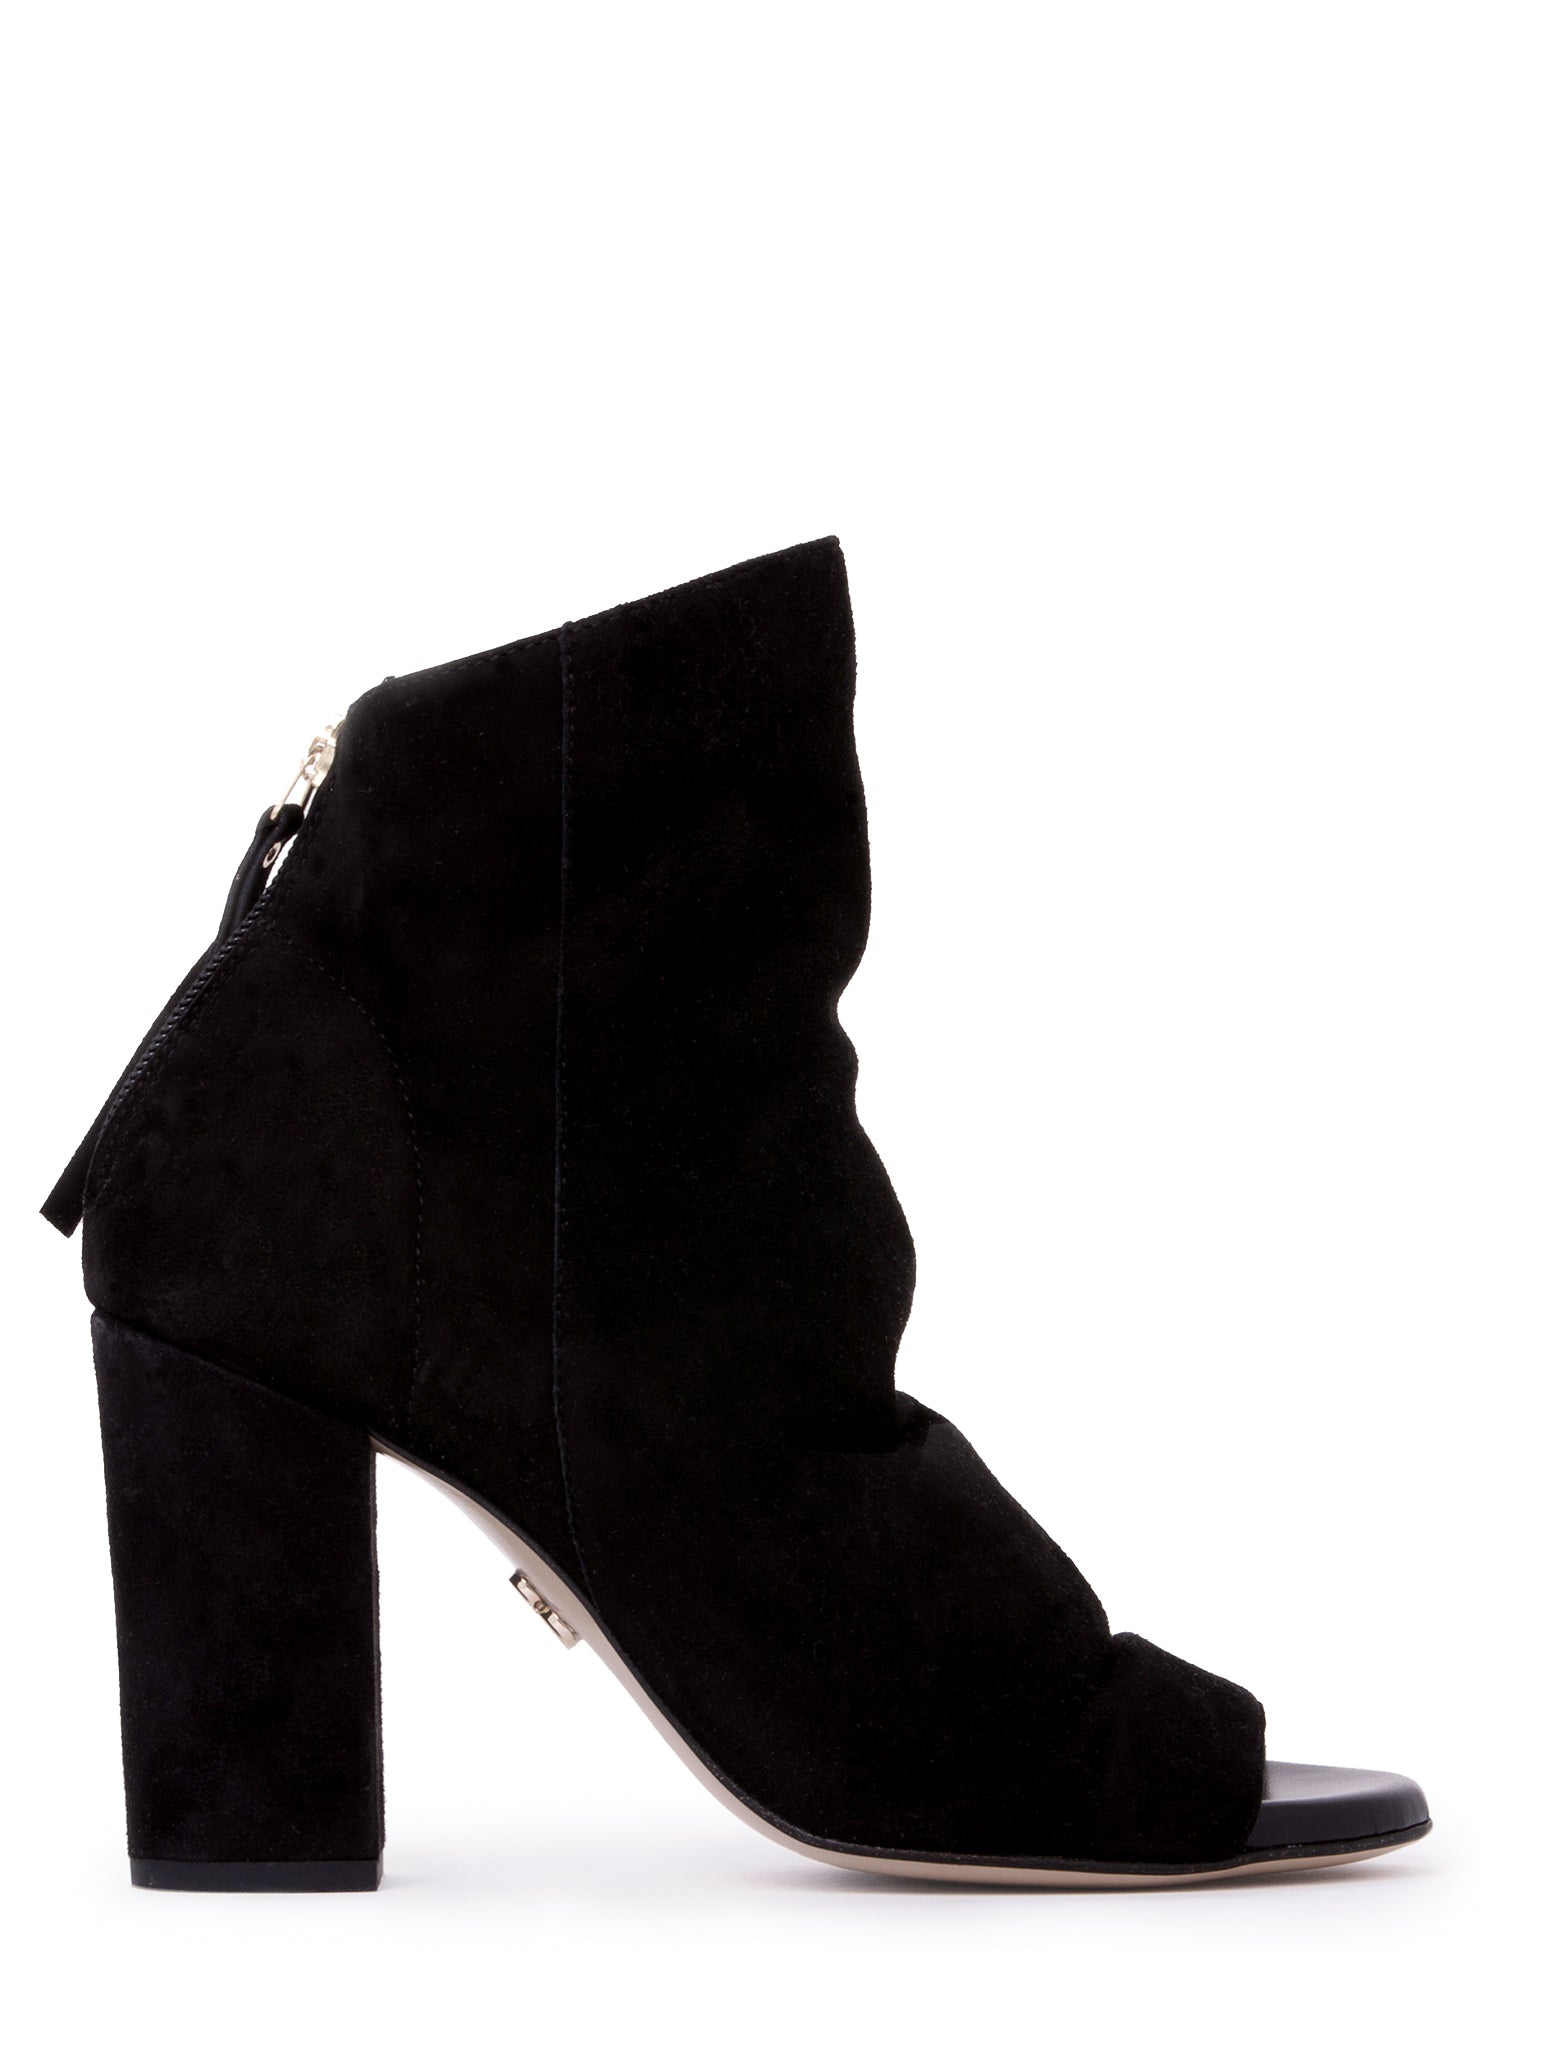 Women’s Hedy Black Work Evening Shootie Bootie Block Heel Suede 5.5 Uk Beautiisoles by Robyn Shreiber Made in Italy